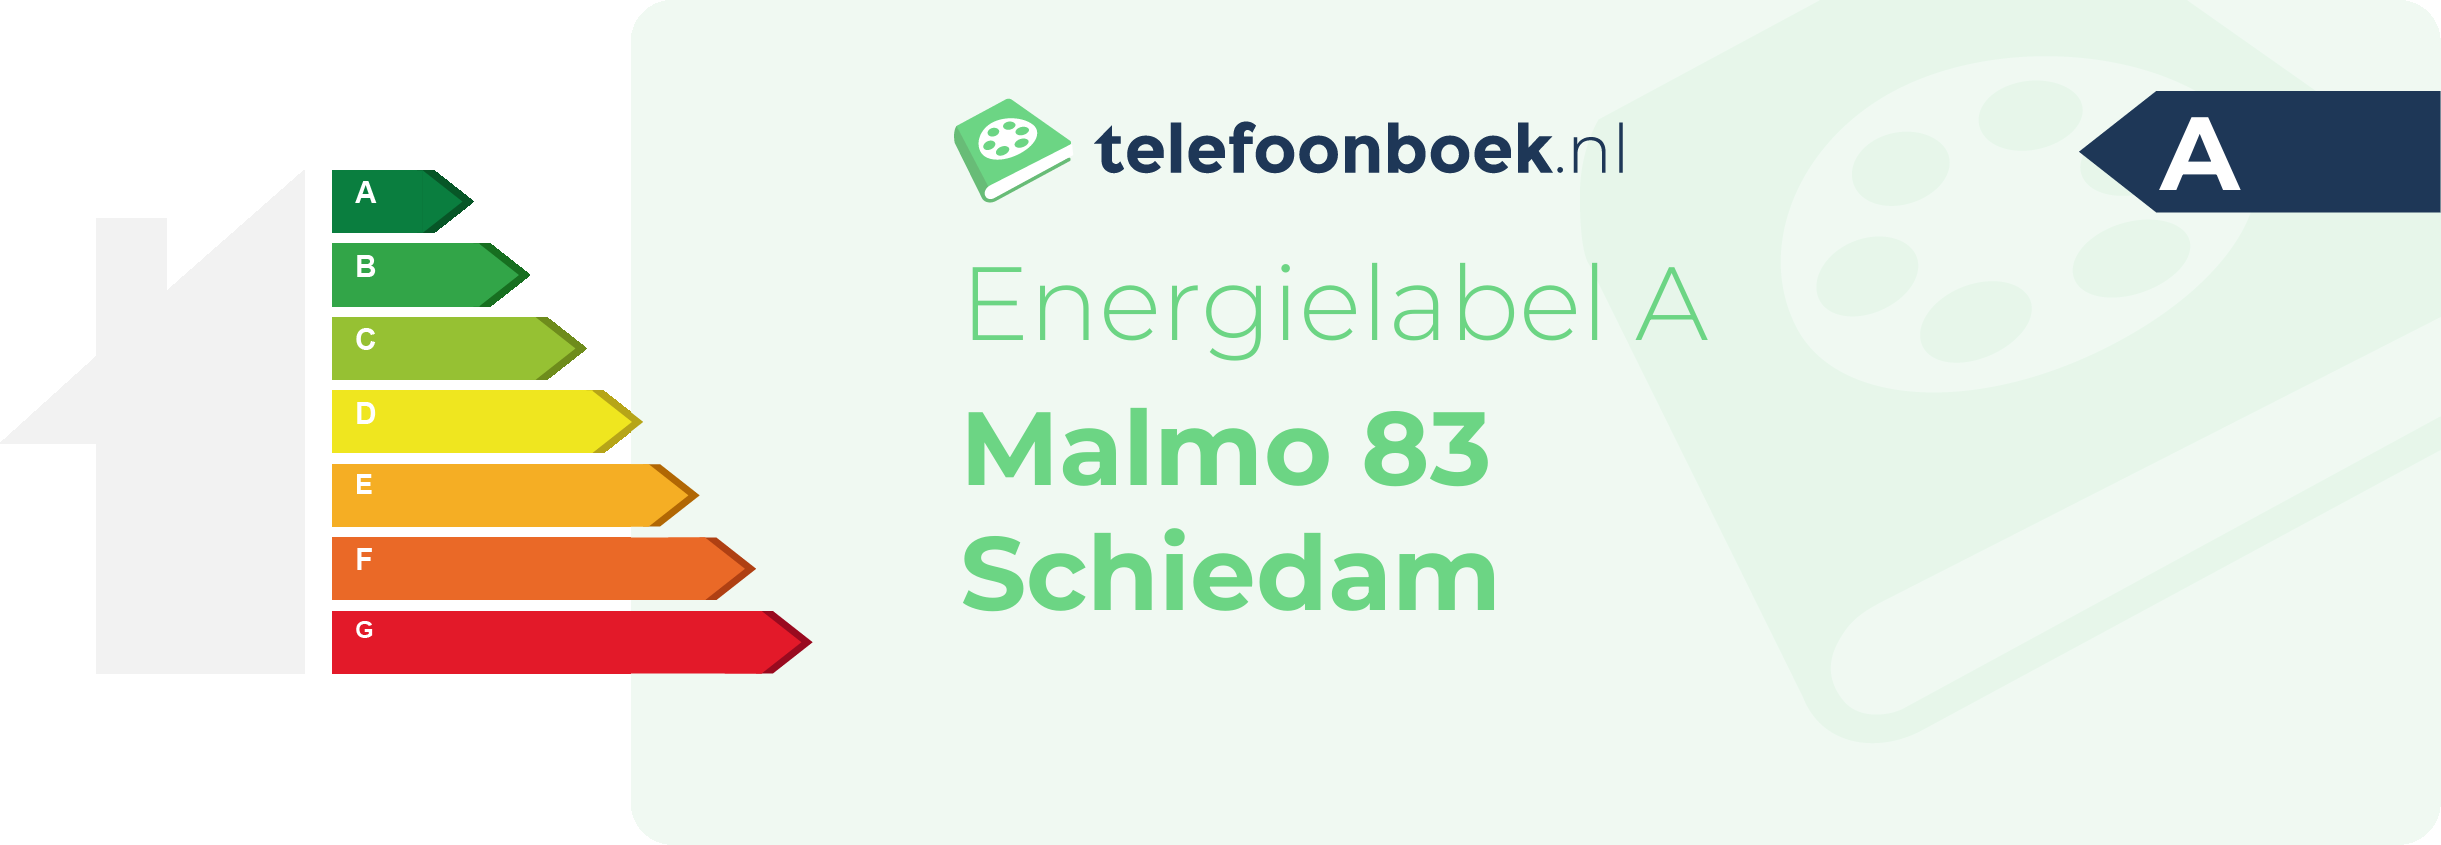 Energielabel Malmo 83 Schiedam